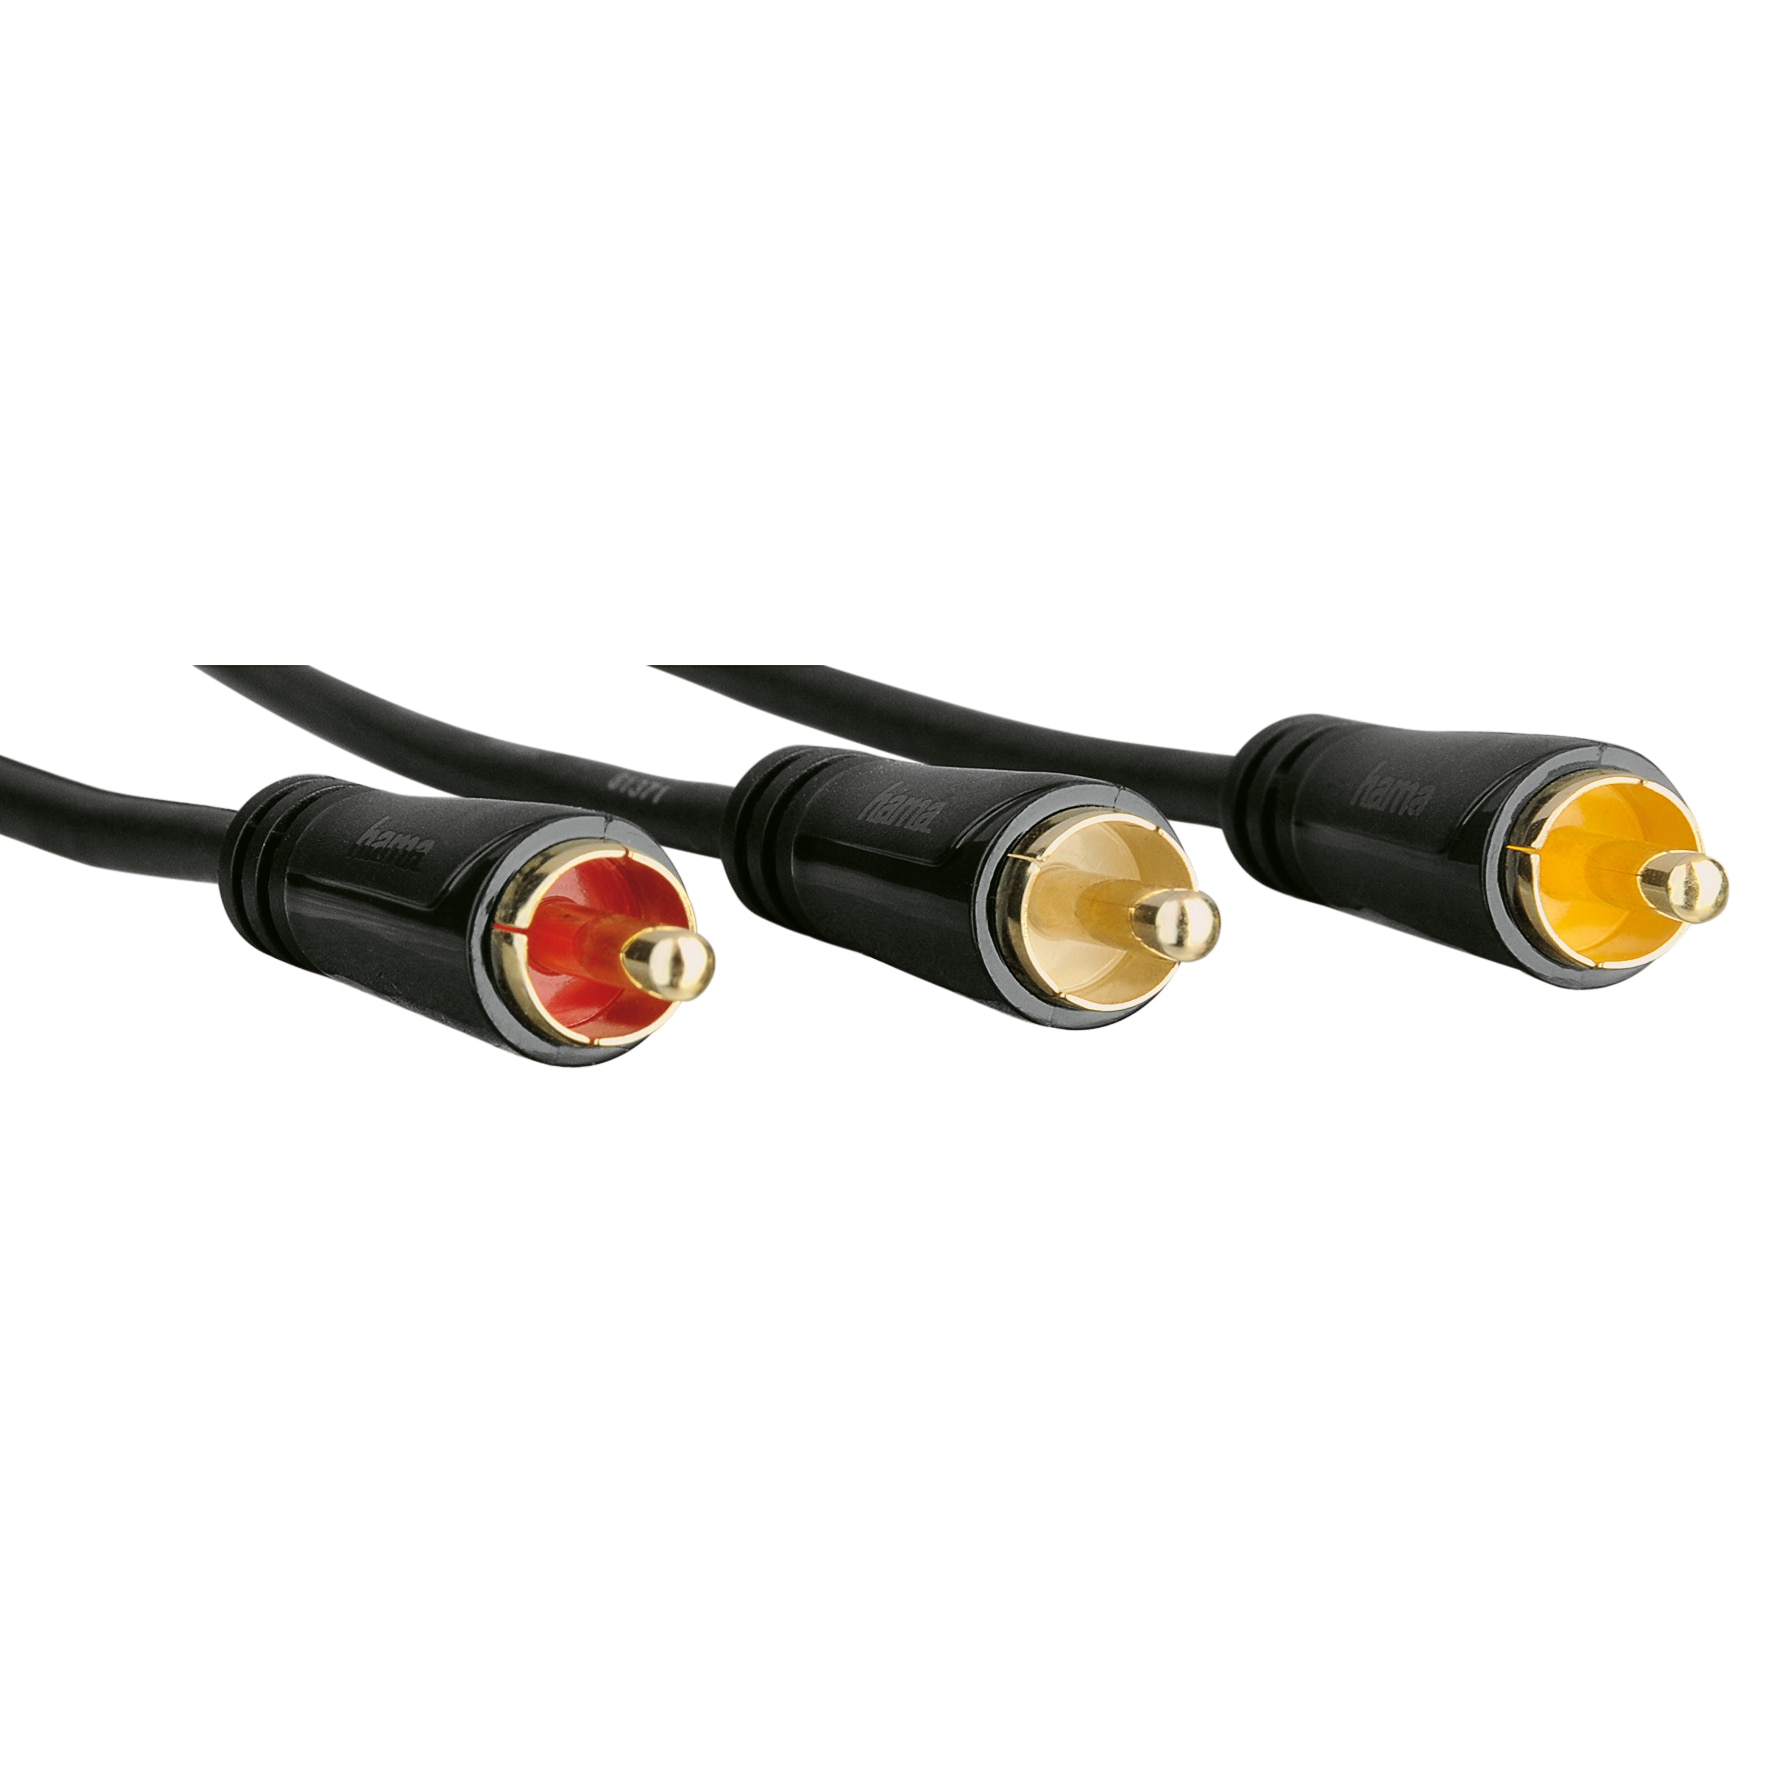 Cable Euroconector 6 RCA A/V Bandridge 1.5 Metros